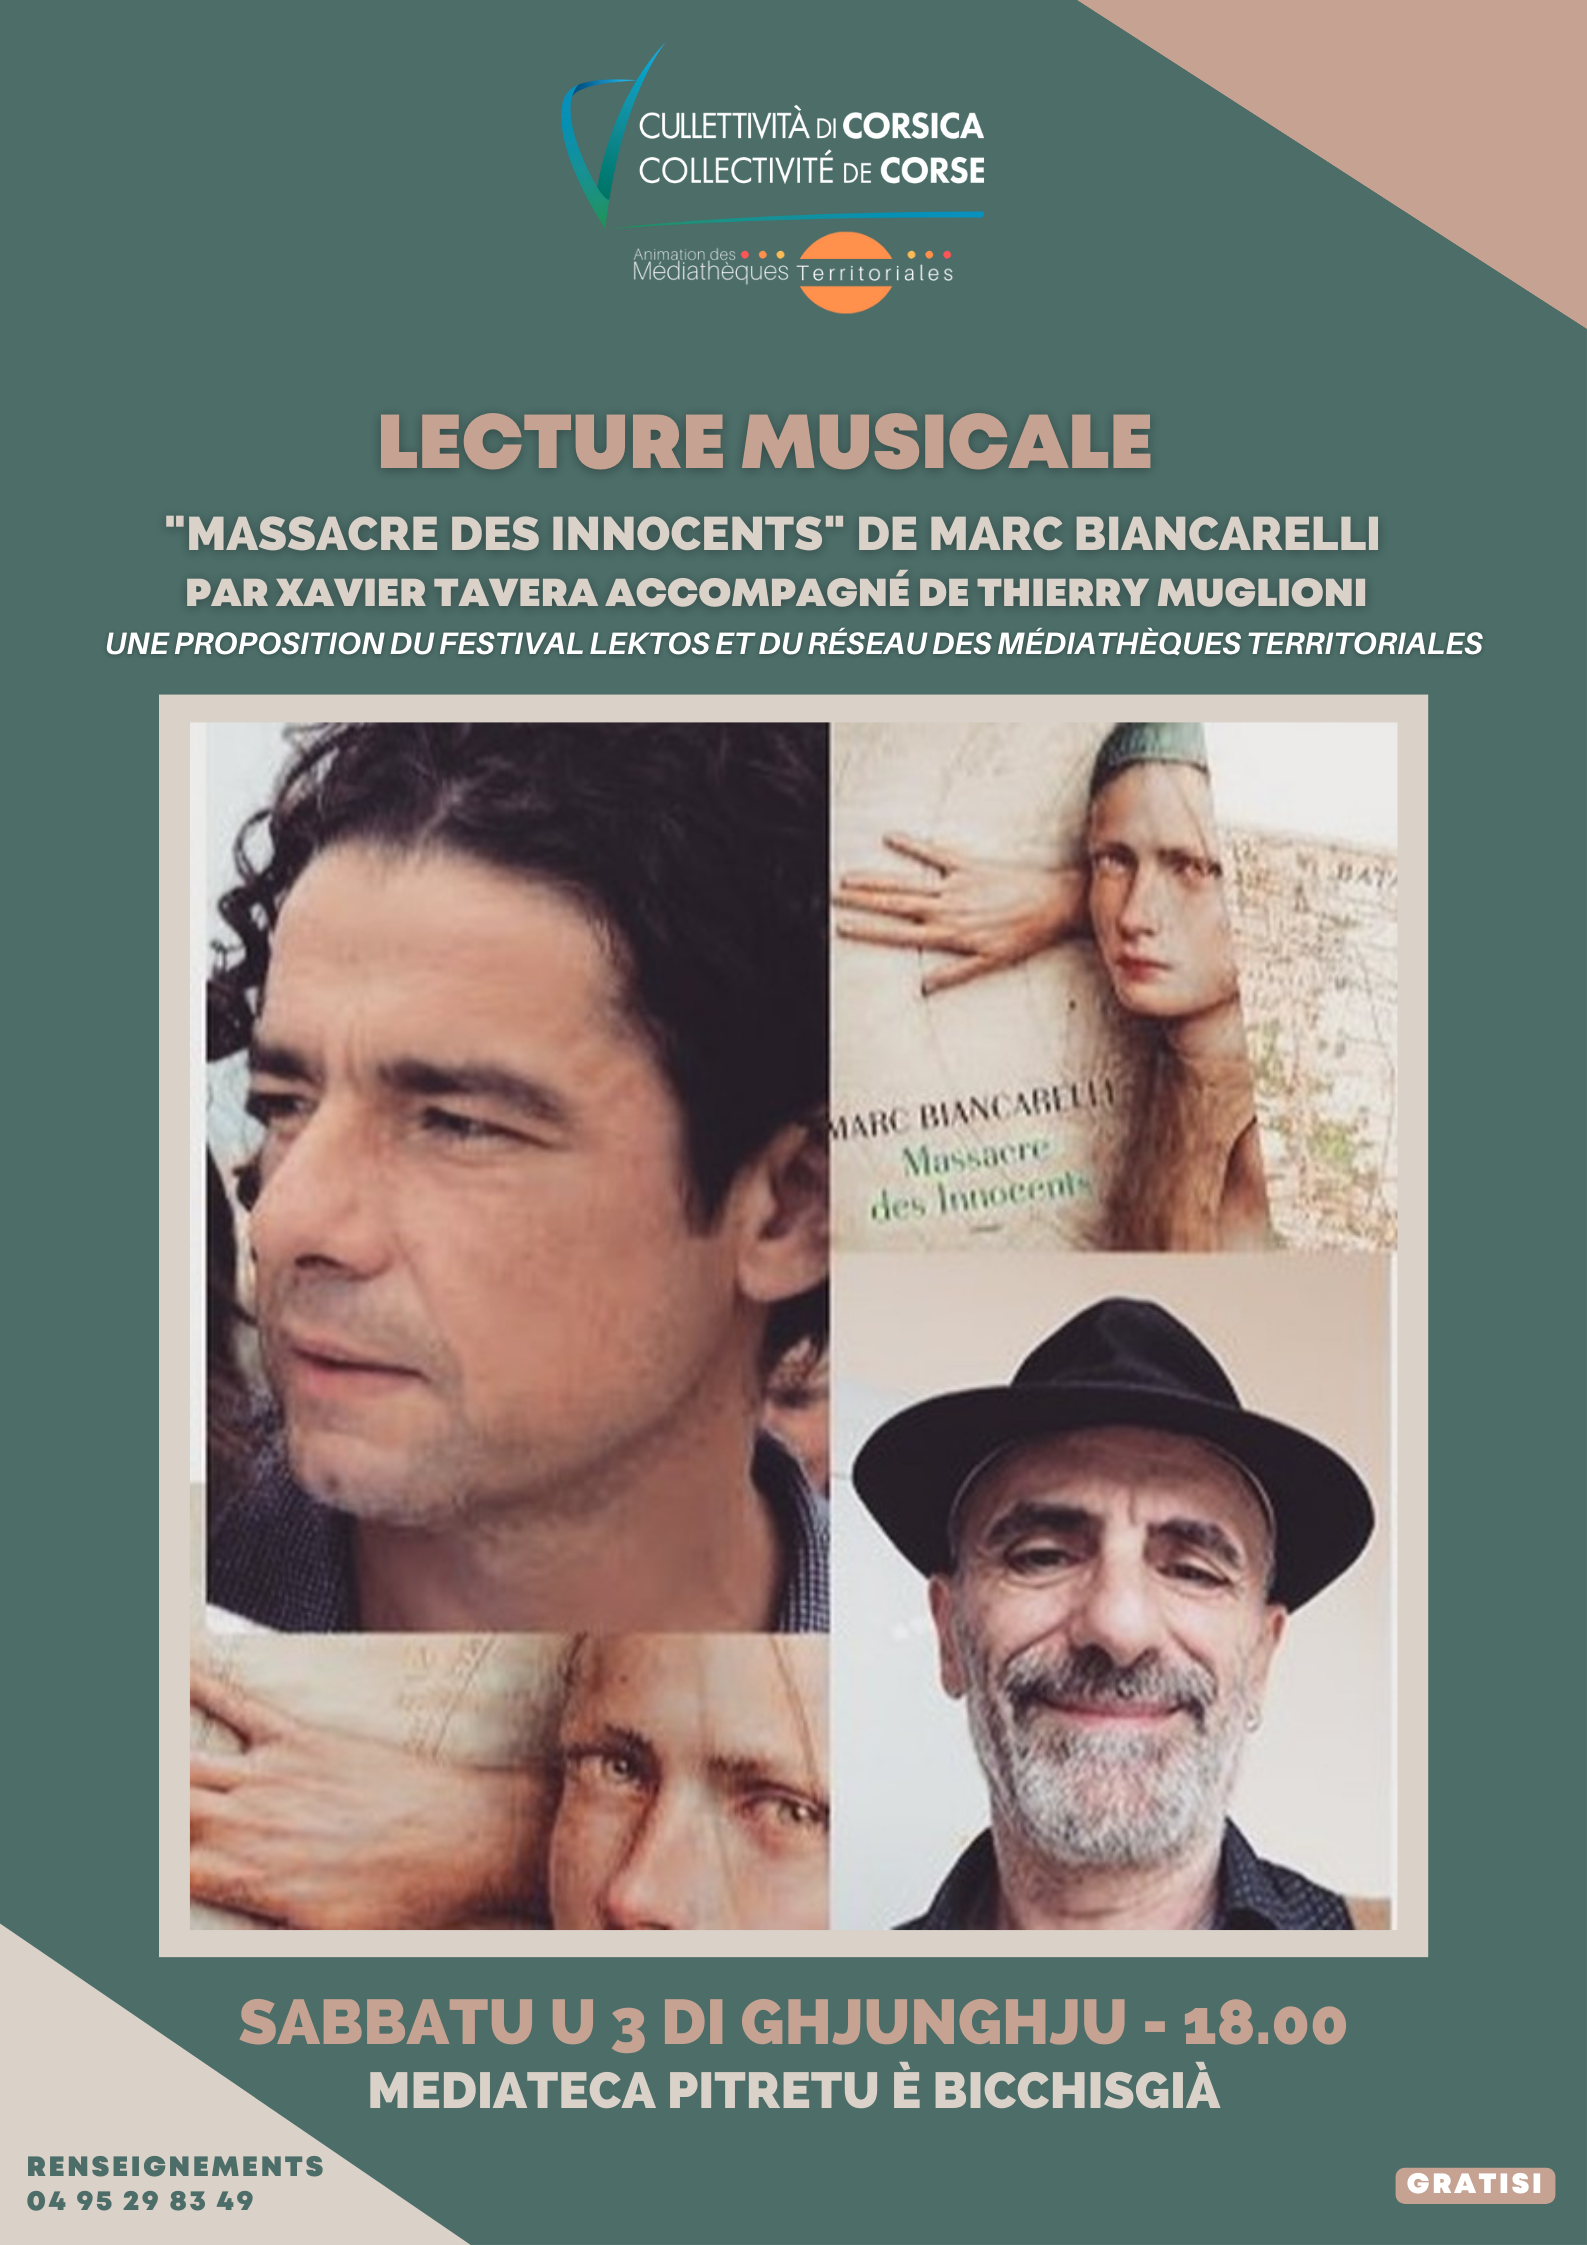 Lecture musicale : "Massacre des innocents" de Marc Biancarelli par Xavier Tavera accompagné de Thierry Muglioni - Mediateca - Pitretu è Bicchisgià 